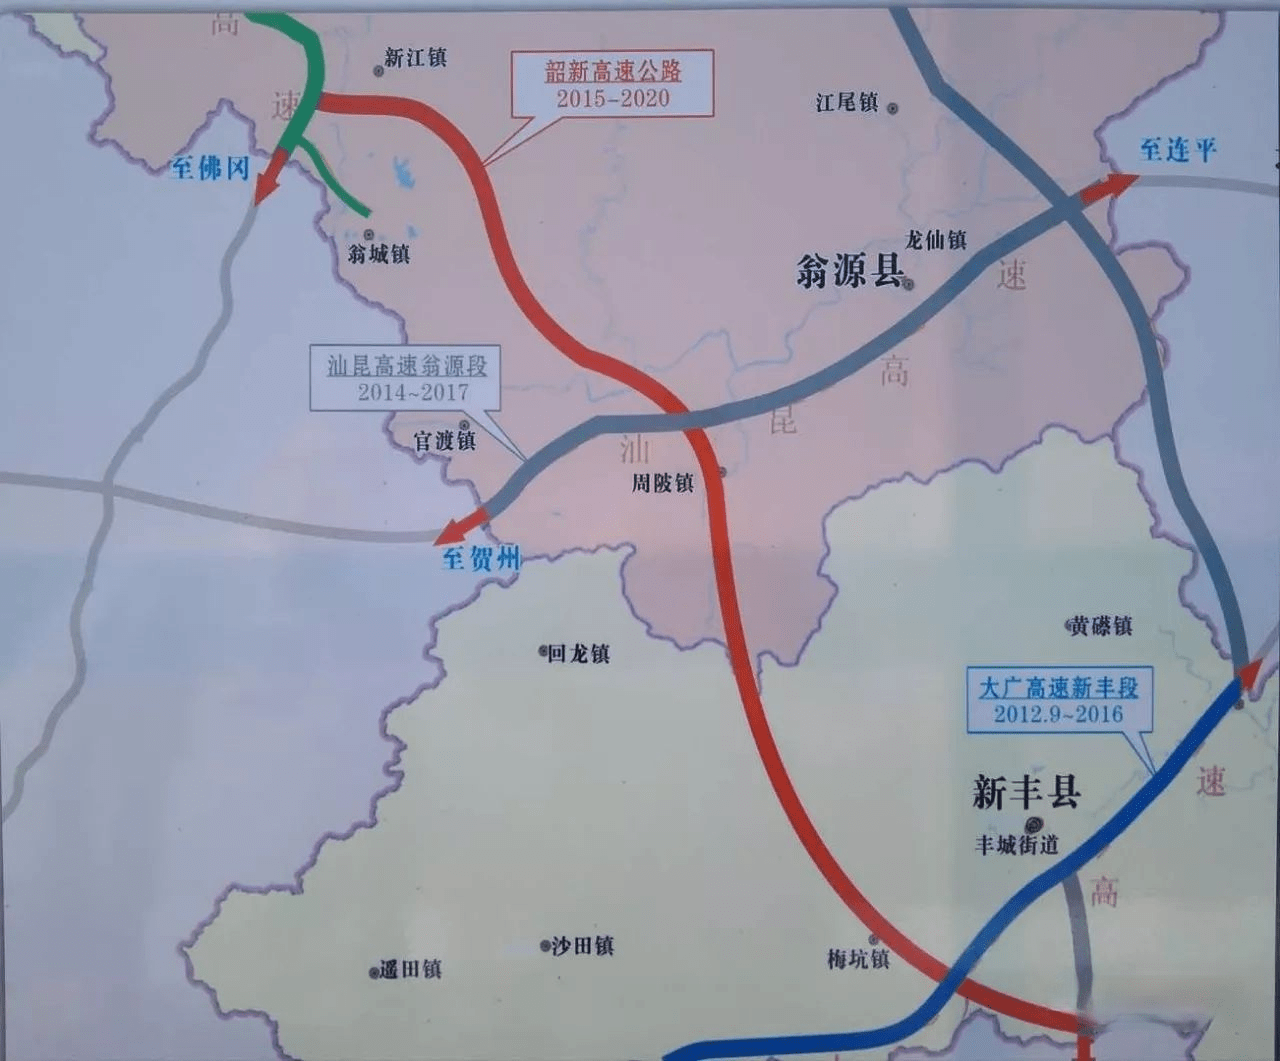 连接京港澳高速,汕昆高速,大广高速,武深高速4条高速公路干线,全长83